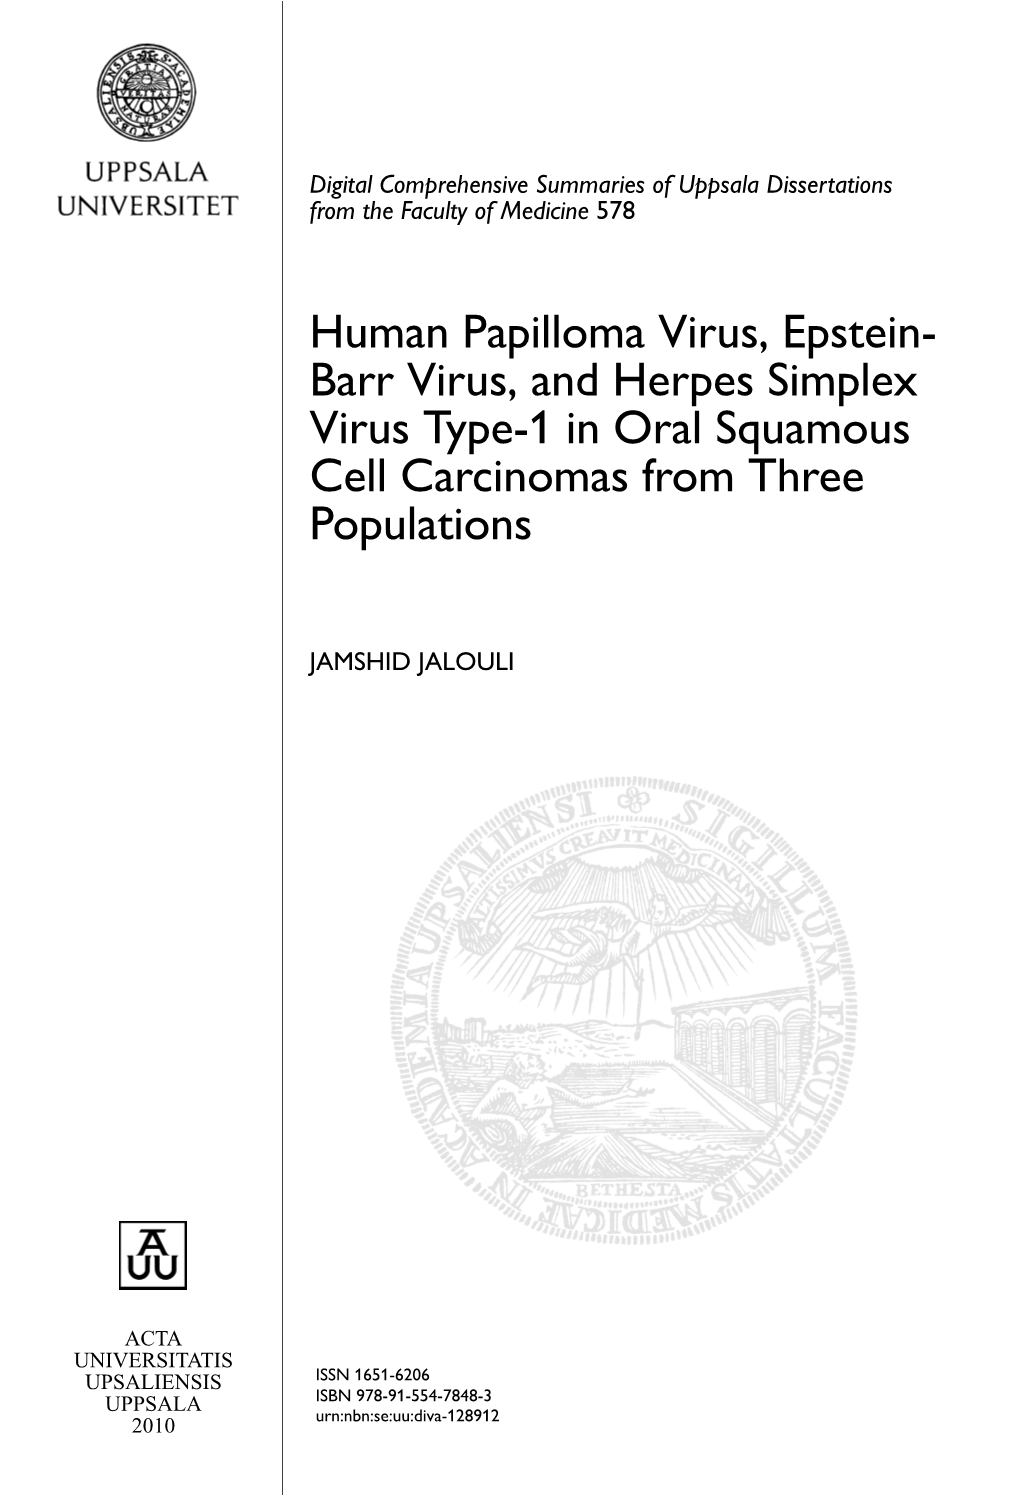 Human Papilloma Virus, Epstein-Barr Virus, and Herpes Simplex Virus